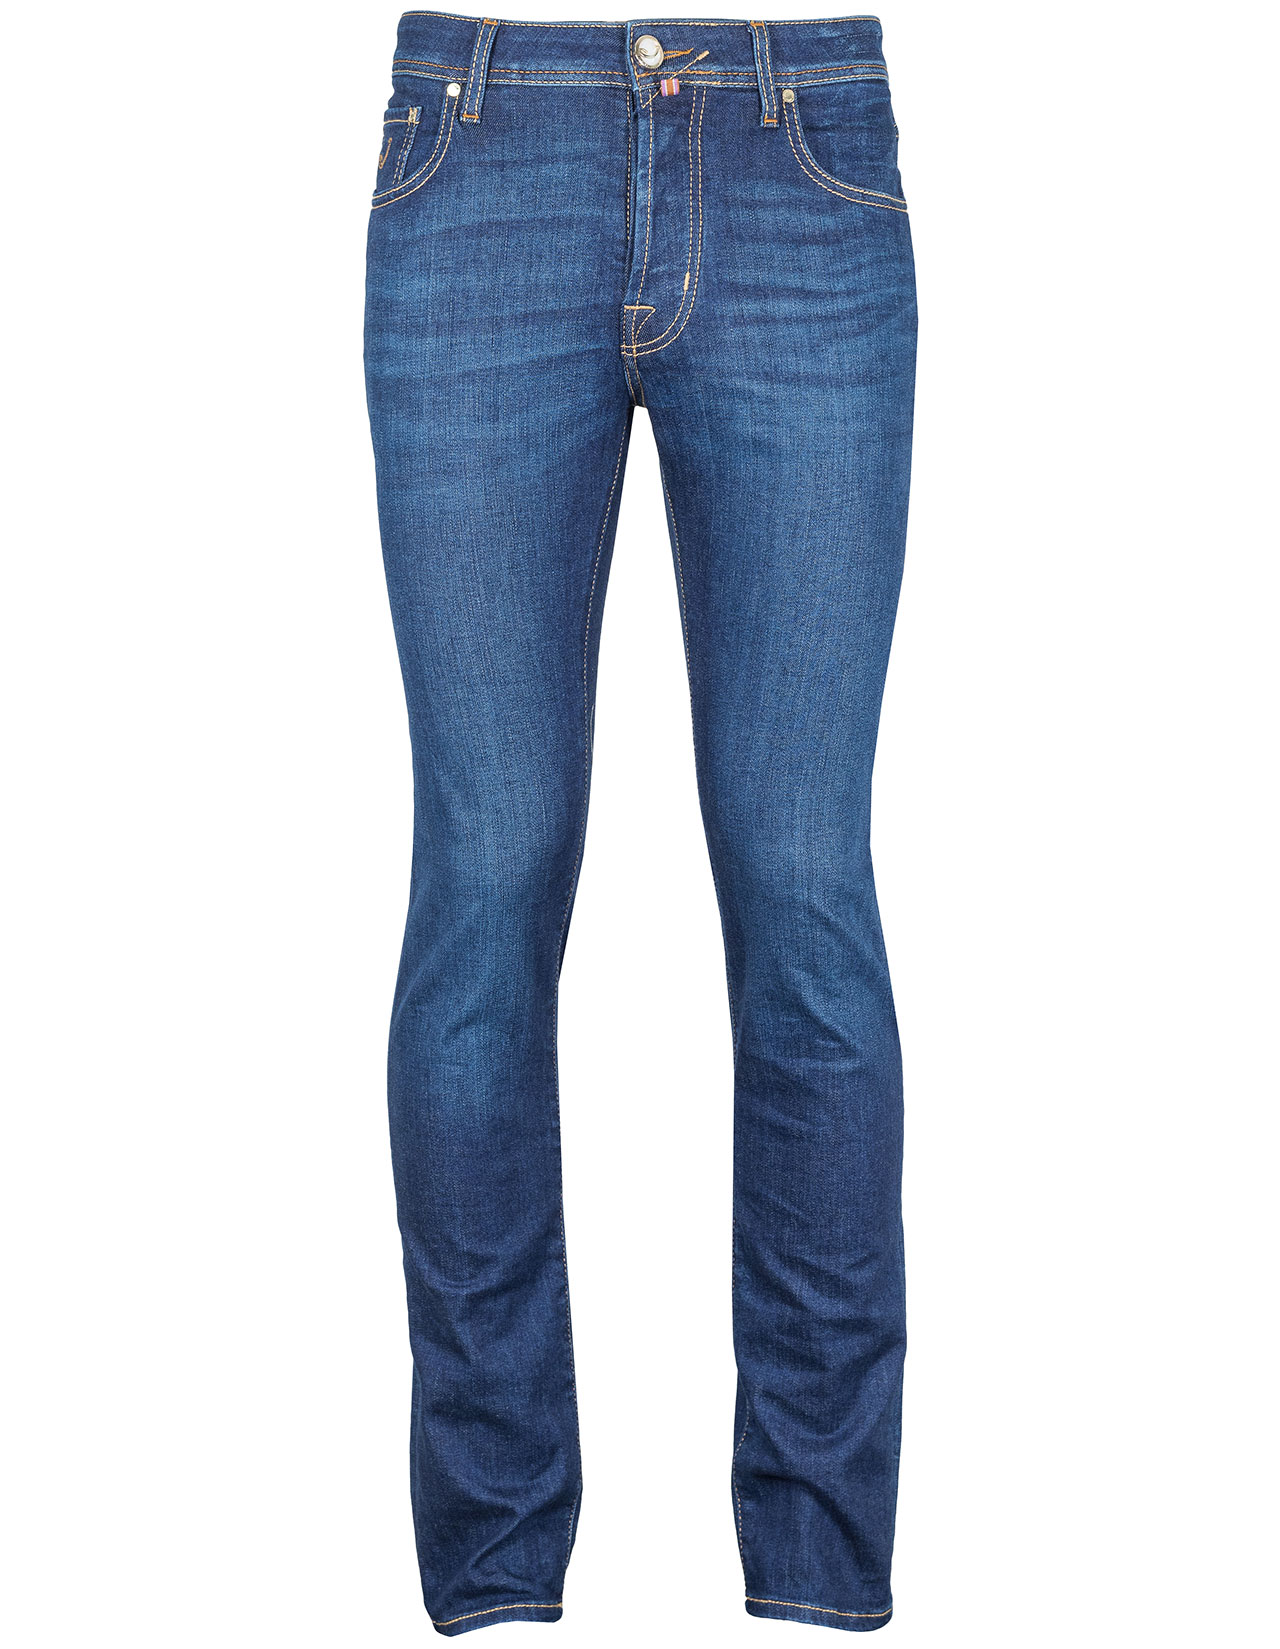 Jacob Cohen Jeans BARD "Premium Edition Denim" in dunkelblau mit abnehmbaren Pythonlabel in braun